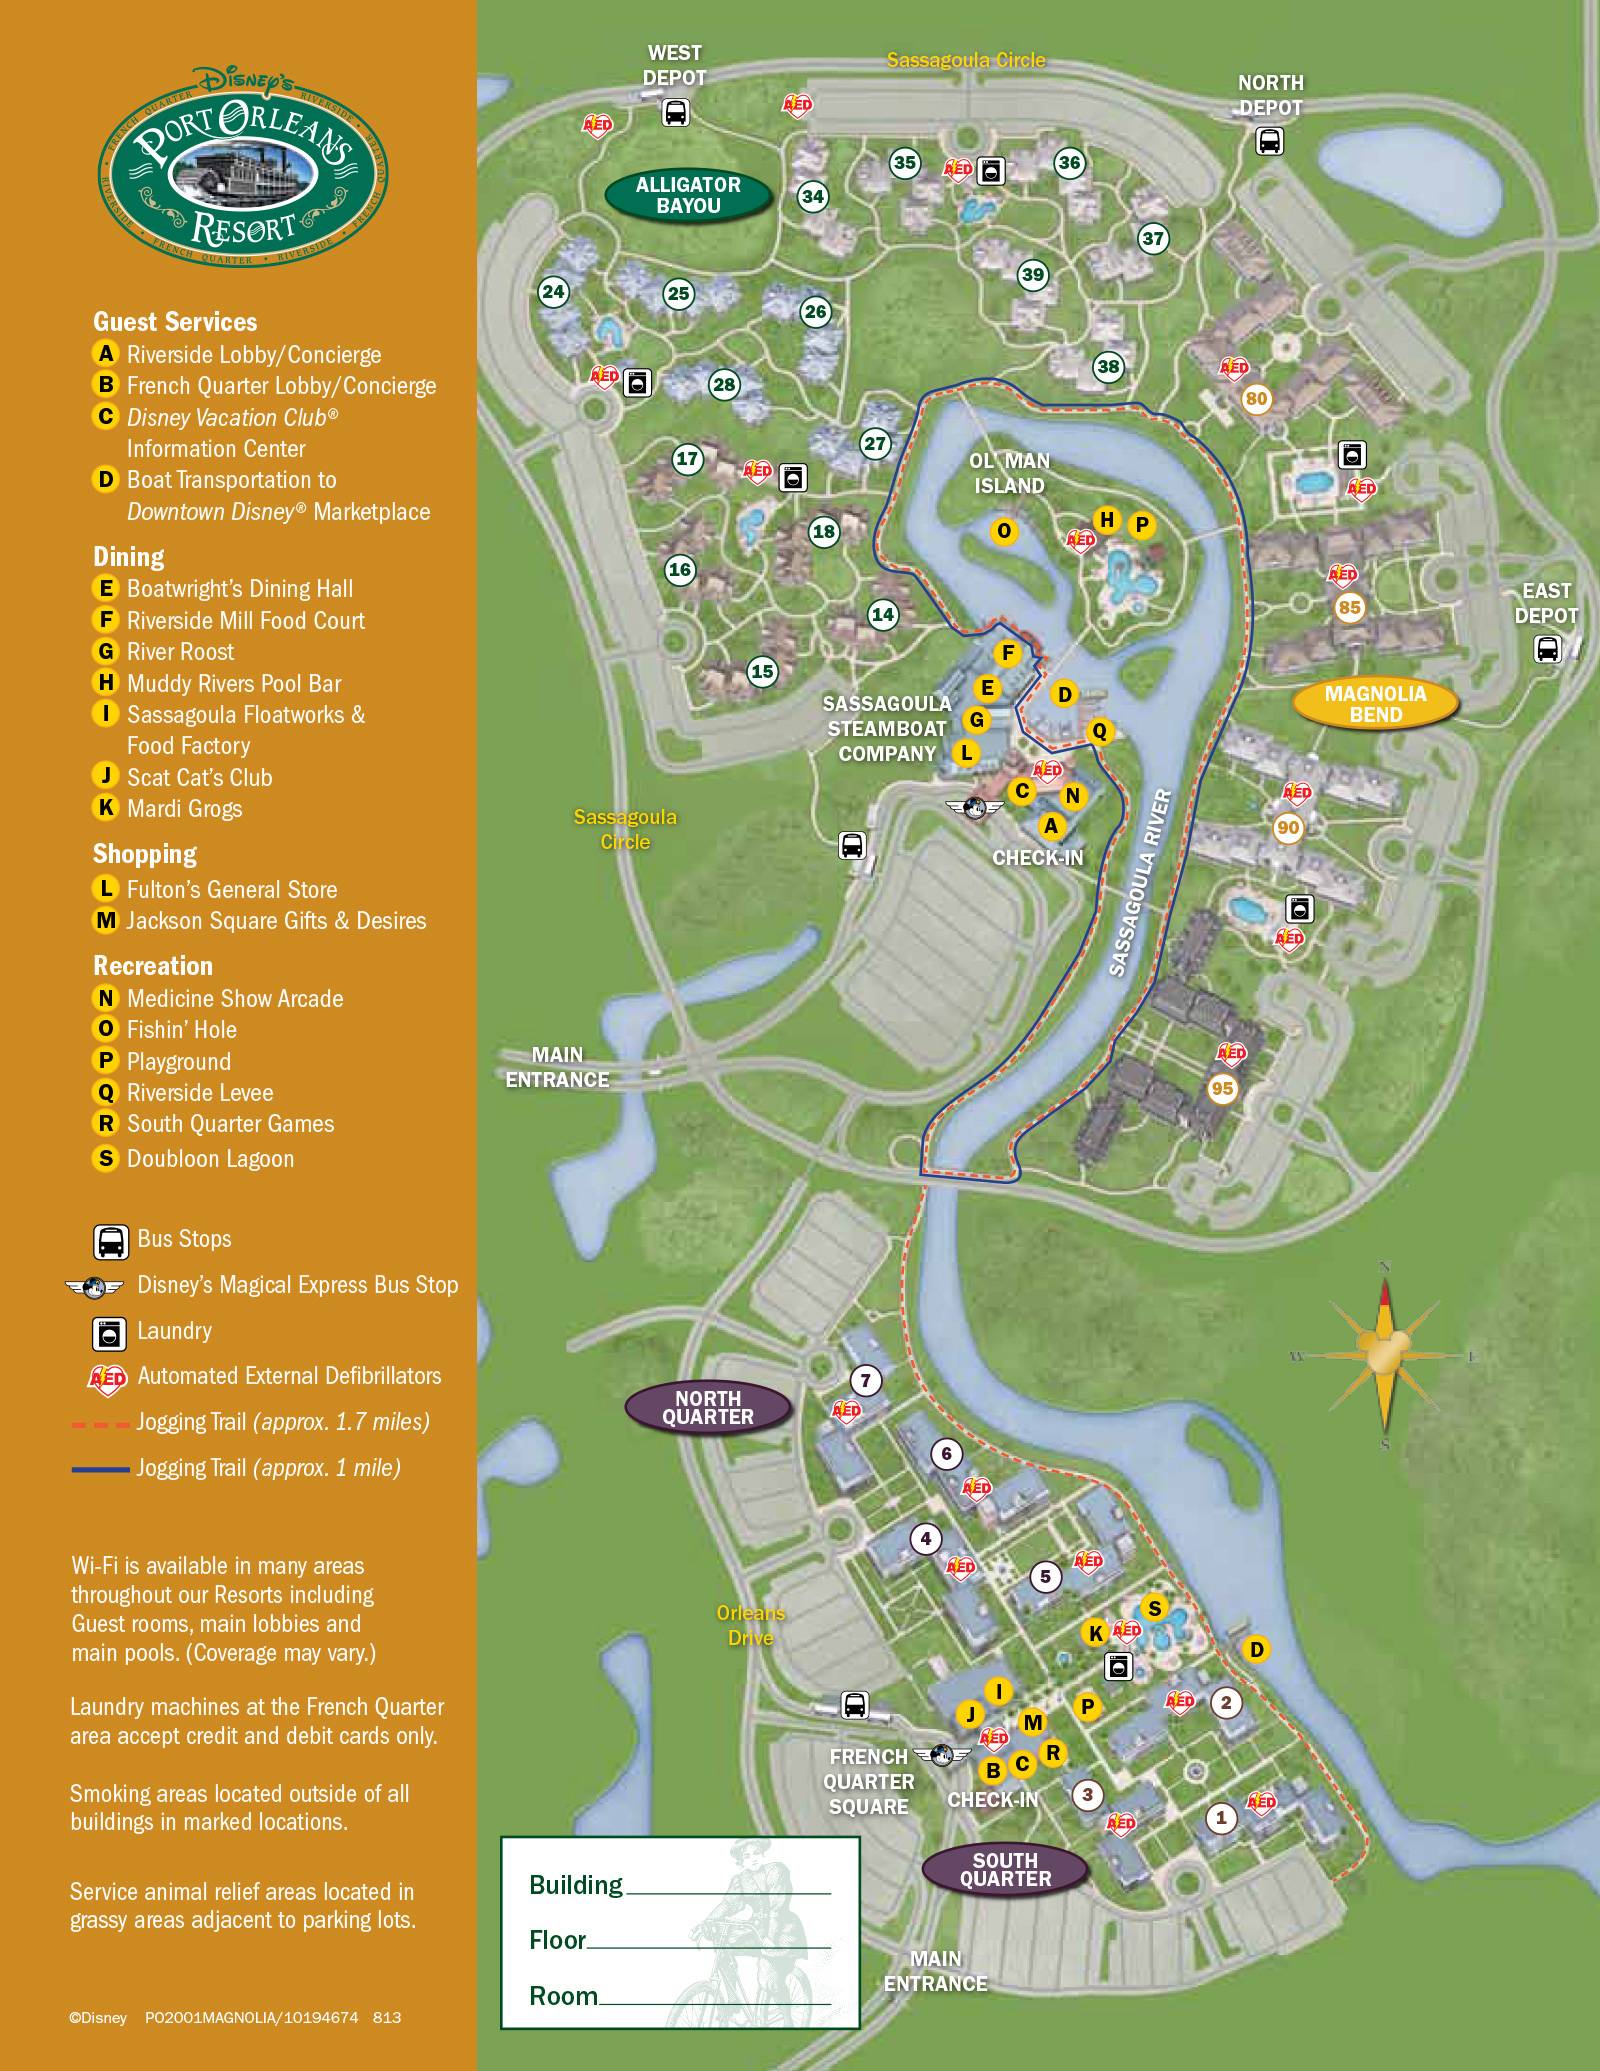 New 2013 Port Orleans Resort map - Magnolia Bend